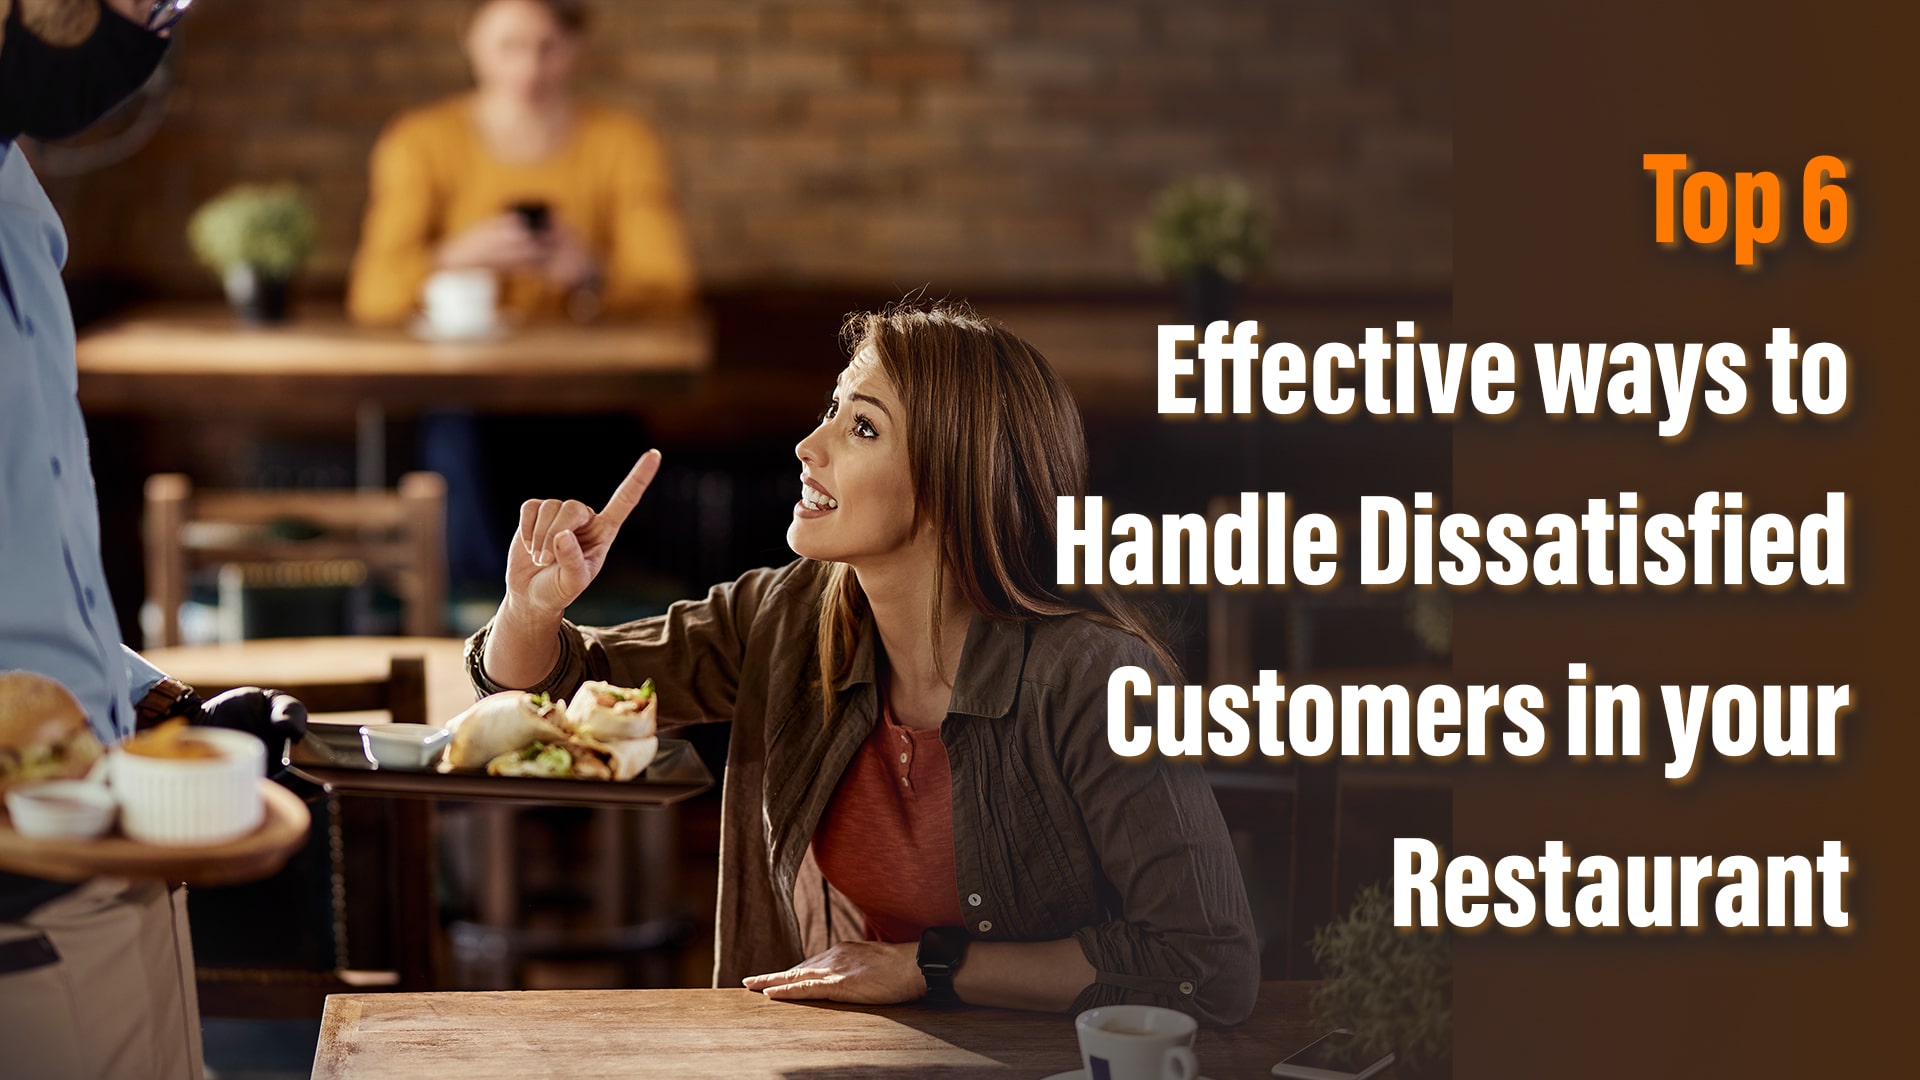 Top 6 Effective Ways to Handle Dissatisfied Customers in Your Restaurant